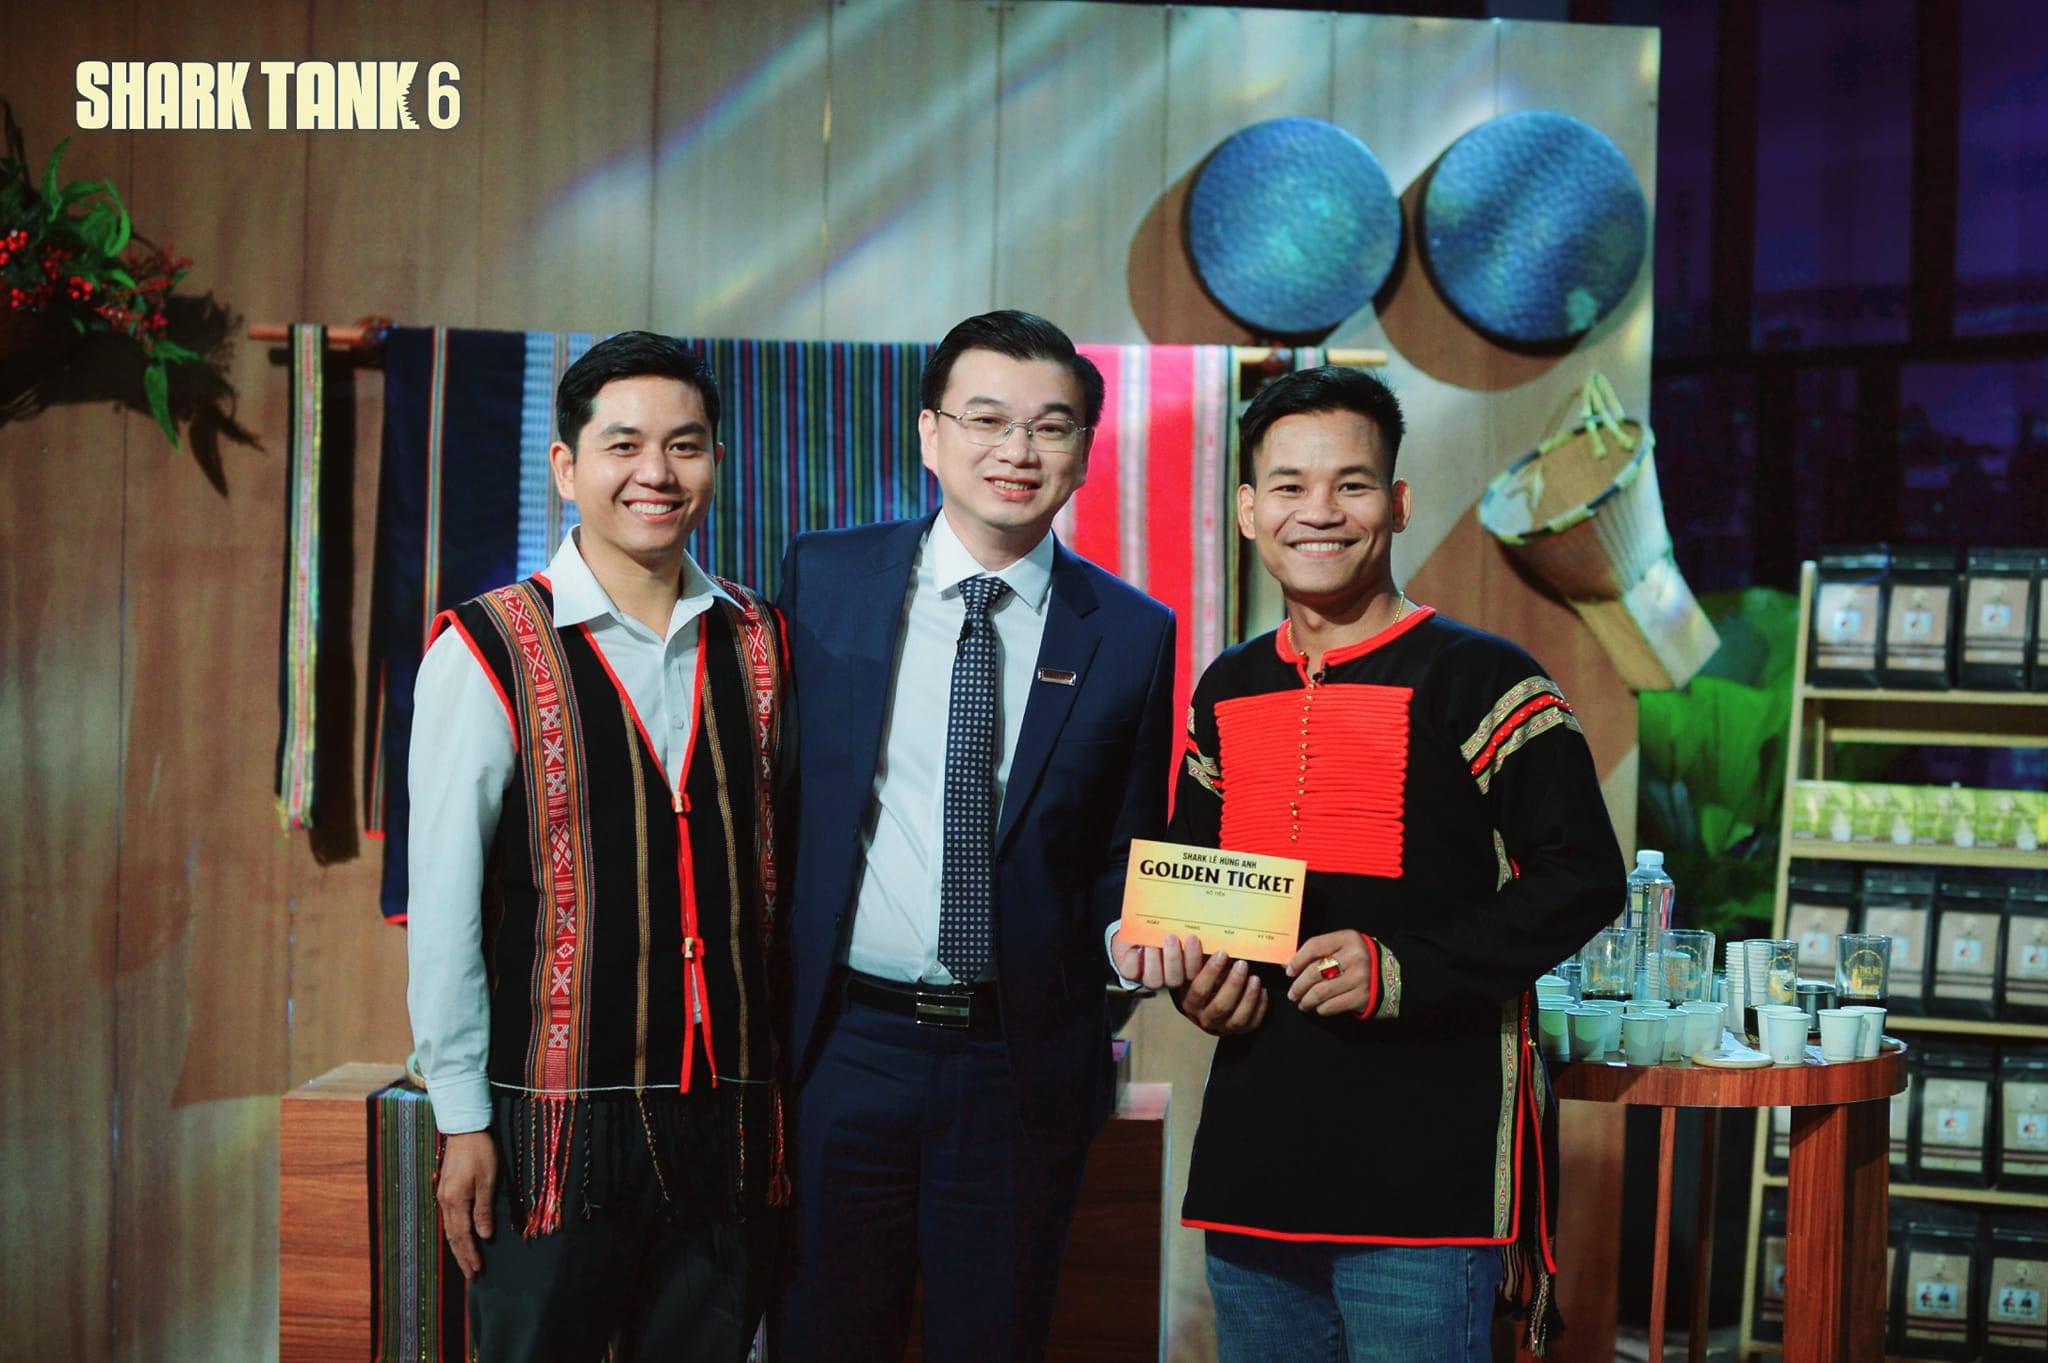 Anh nông dân Việt Nam xuất sắc người Ê Đê làm chủ công ty cà phê vào đề thi Olympic của tỉnh Đắk Lắk- Ảnh 3.